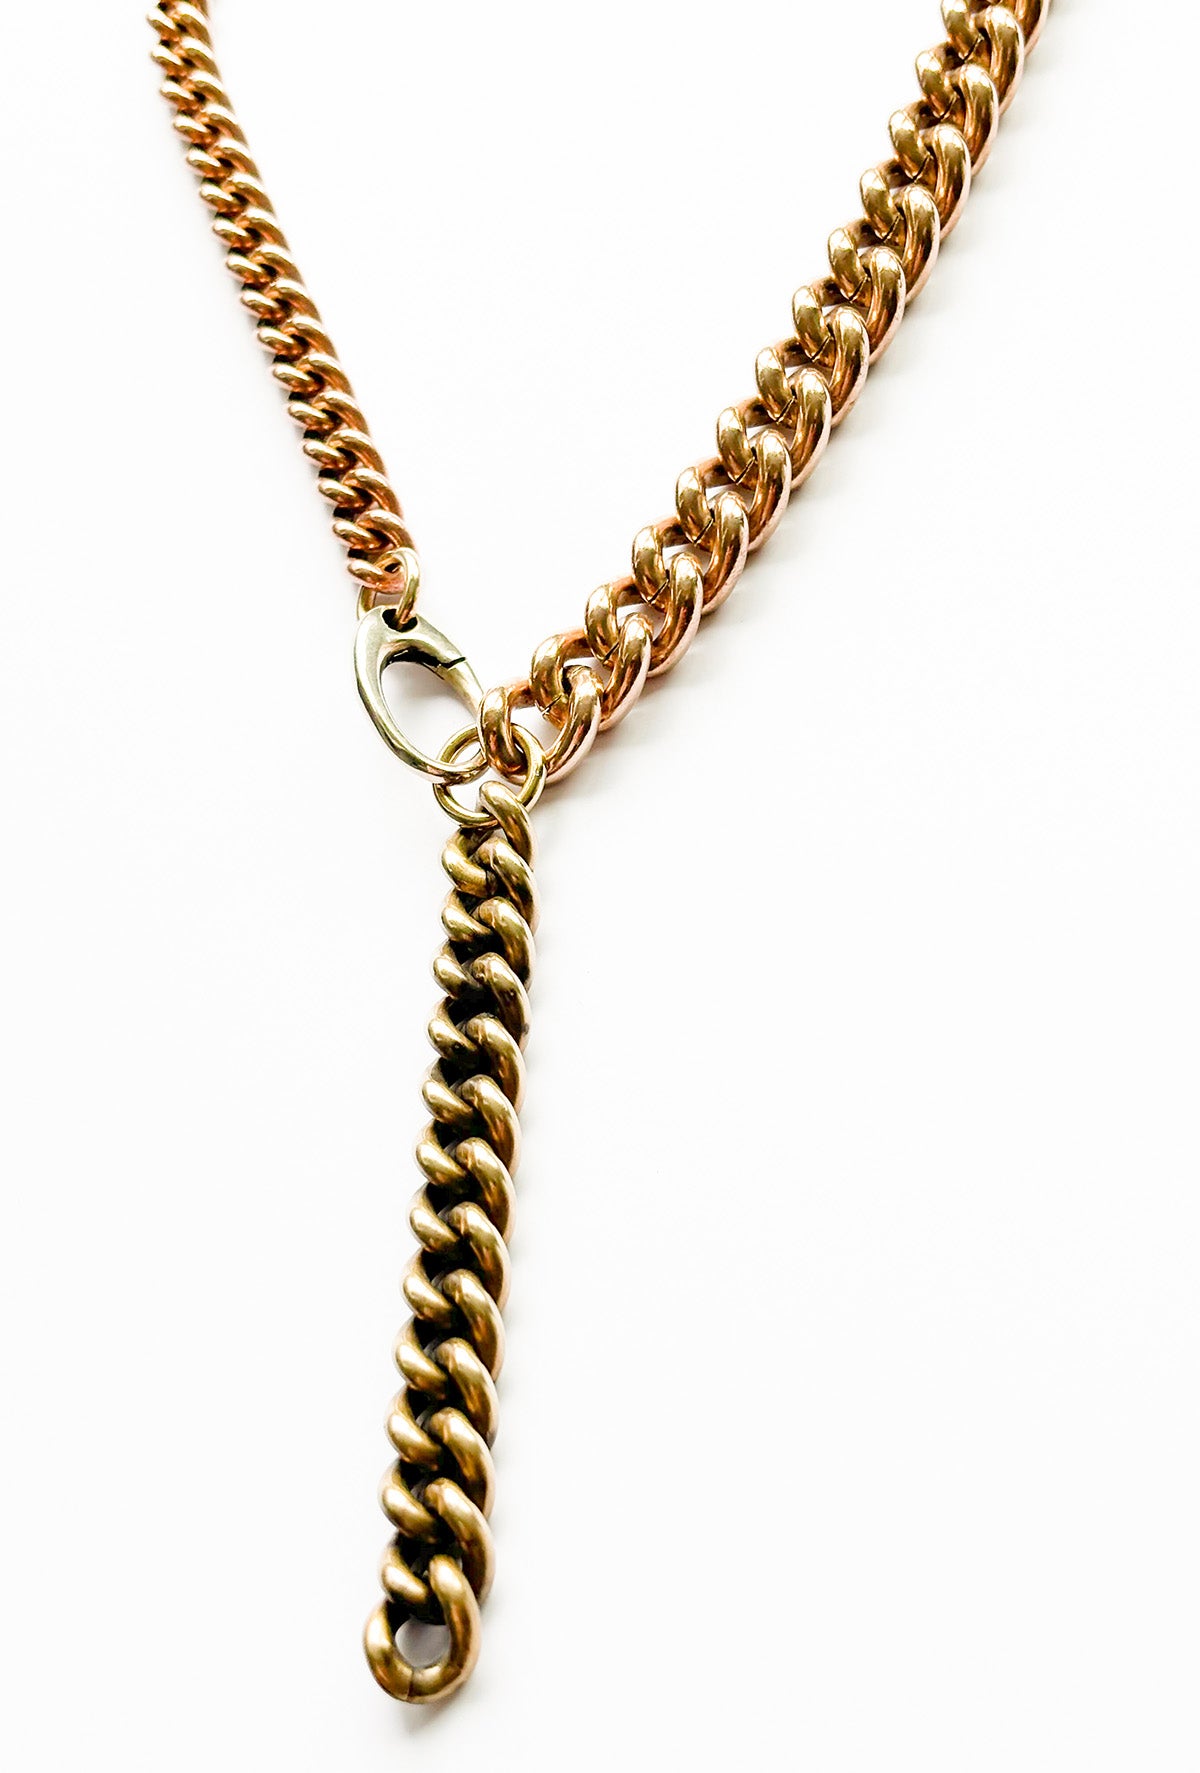 Strangler mix necklace brass